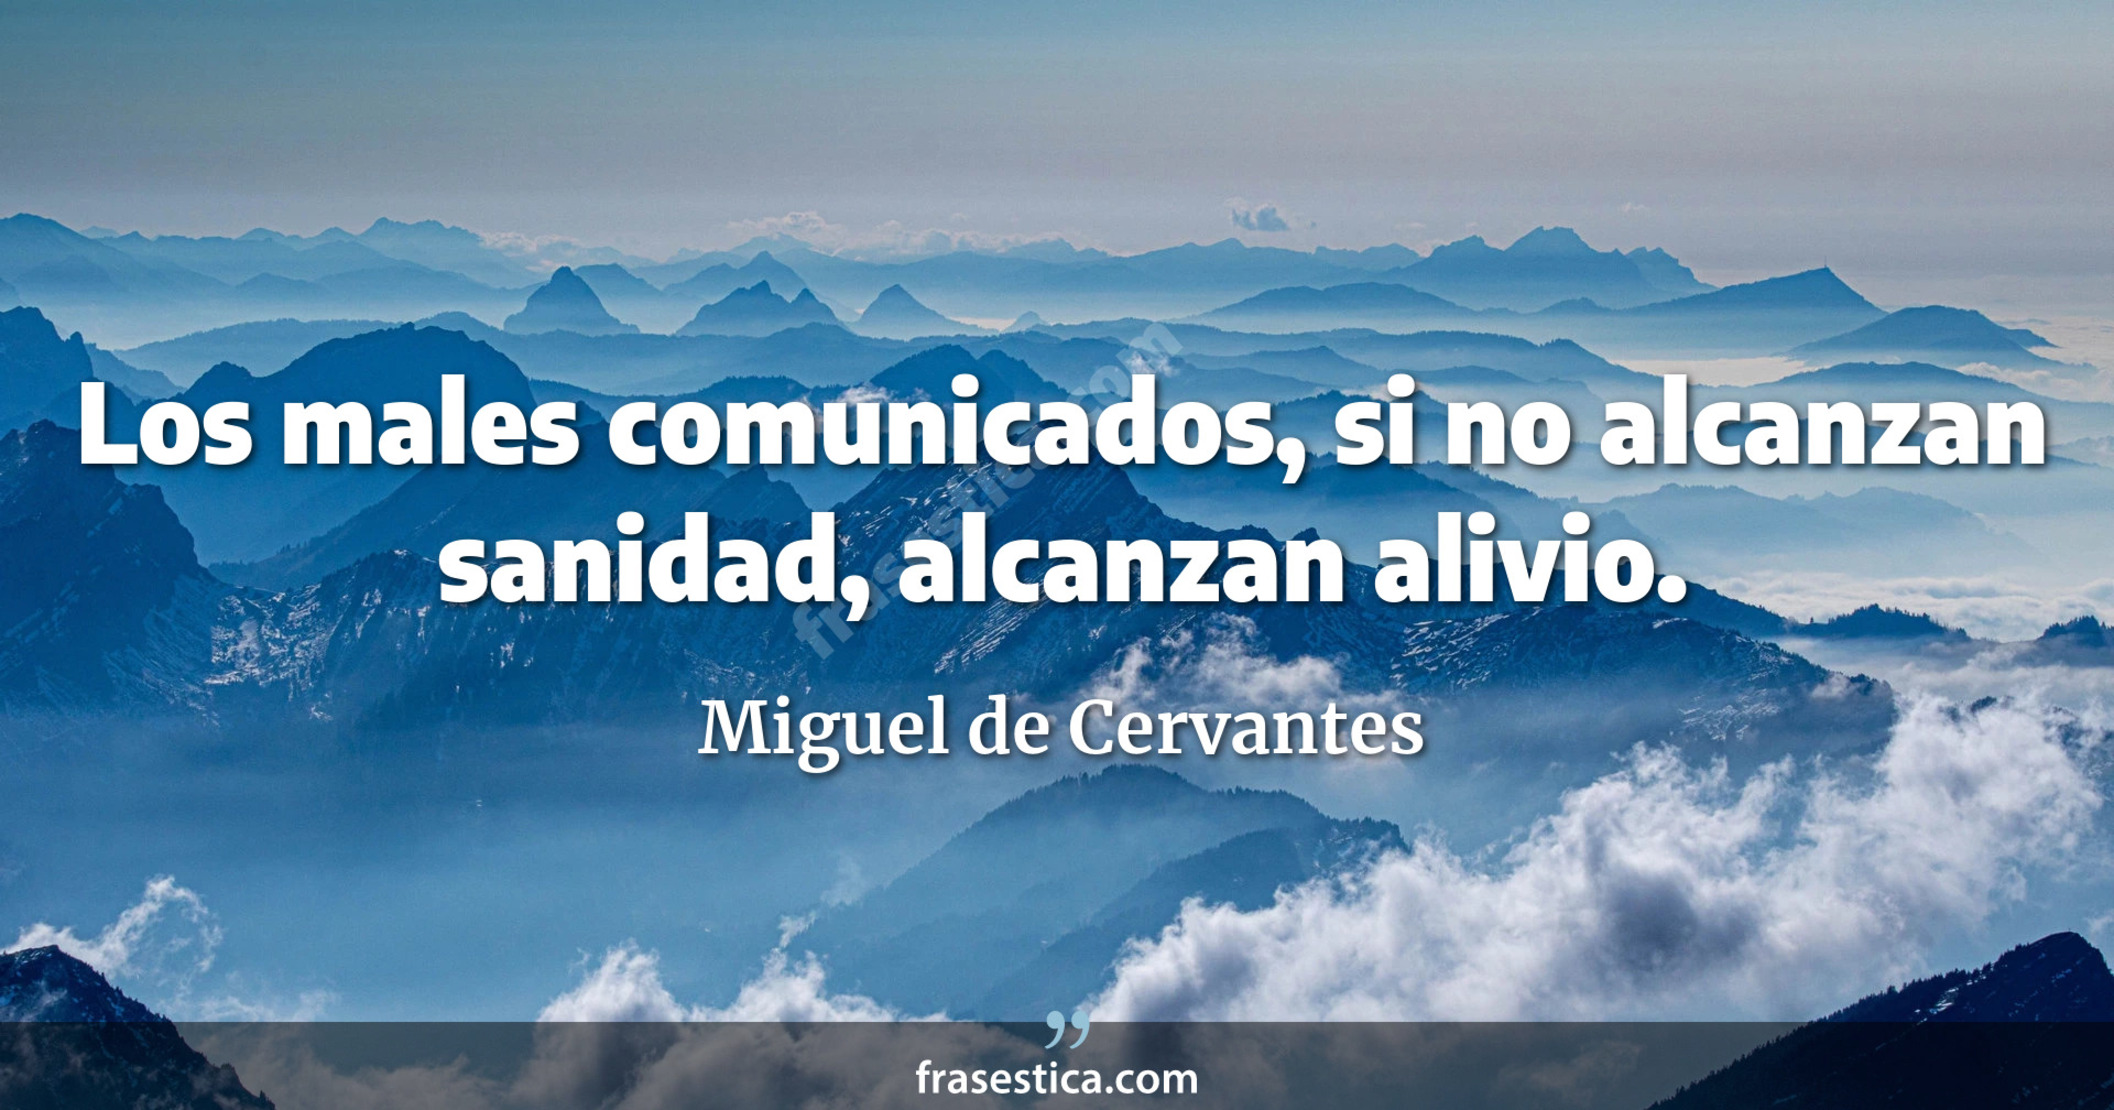 Los males comunicados, si no alcanzan sanidad, alcanzan alivio. - Miguel de Cervantes